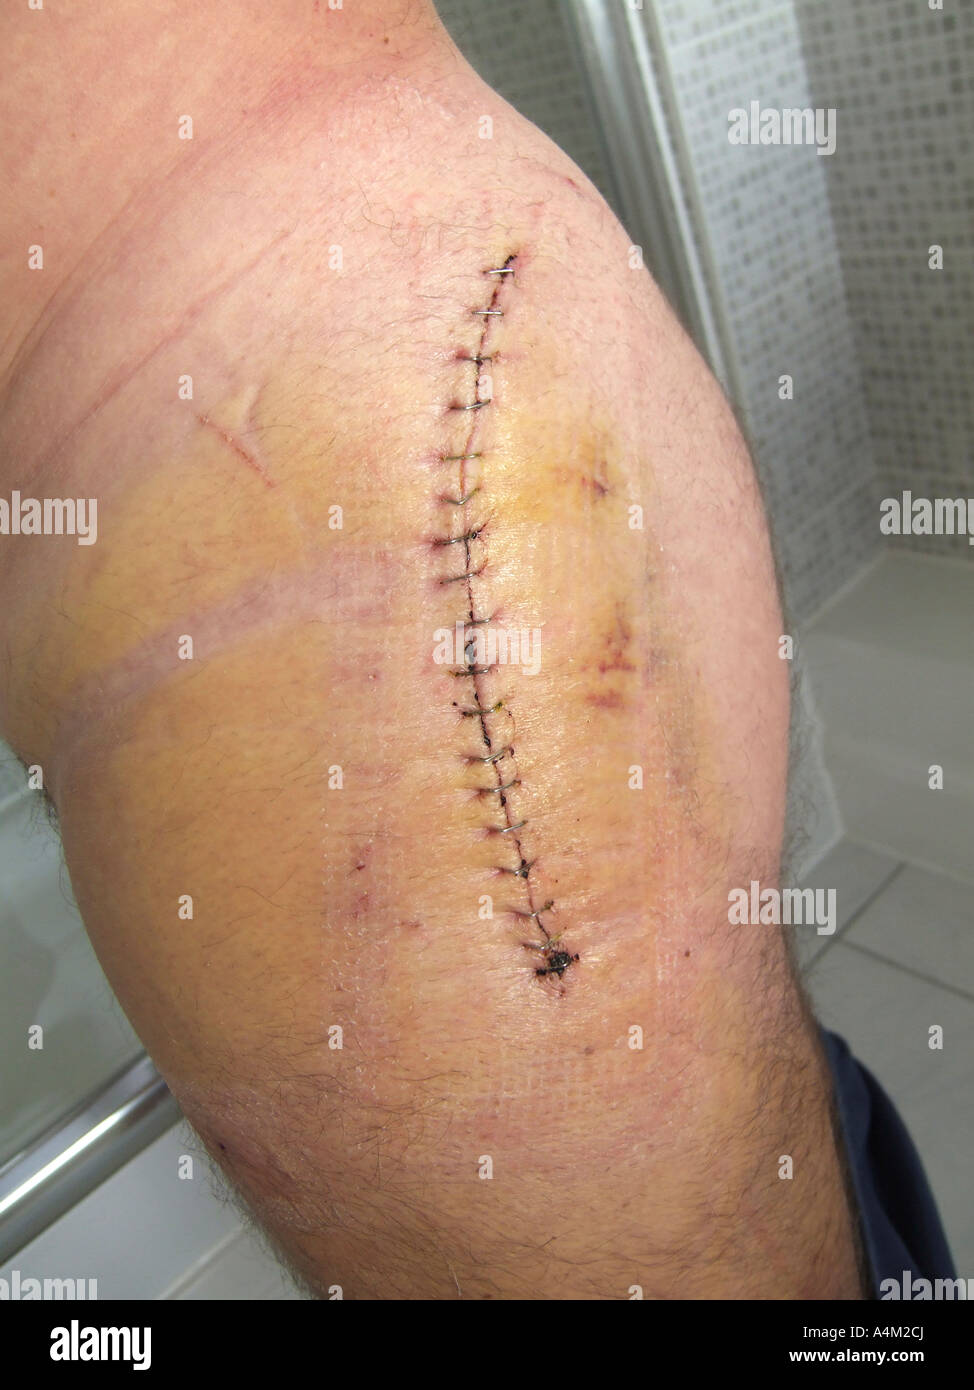 El reemplazo de cadera herida y cicatriz una semana después de la operación de reemplazo de cadera Birmingham Foto de stock